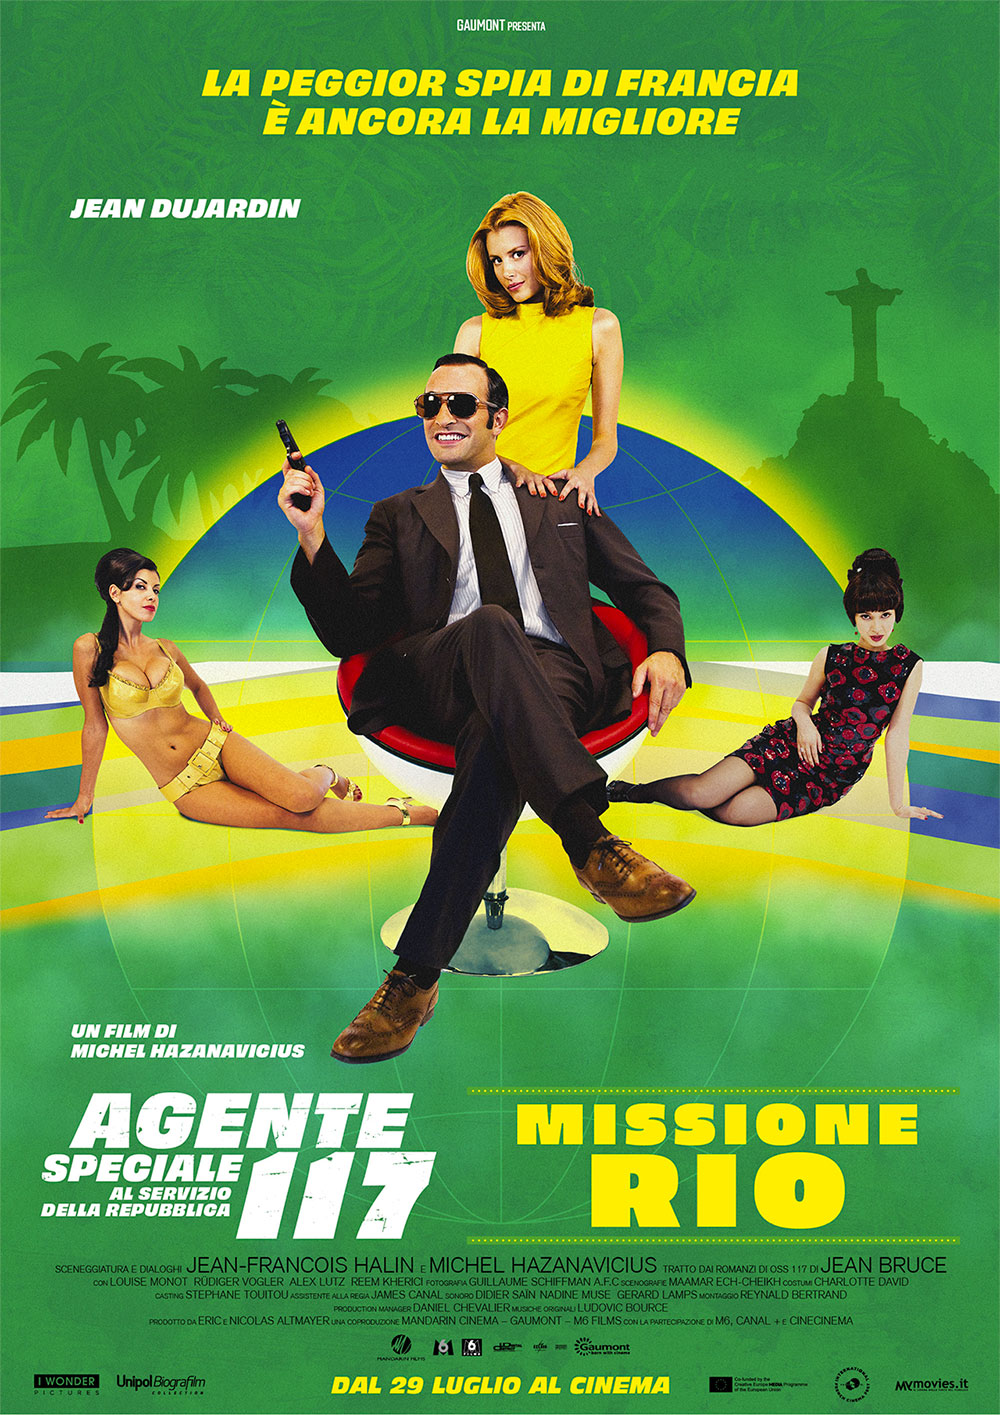  Dall'articolo: Agente Speciale 117 al Servizio della Repubblica - Missione Rio, il poster italiano del film.